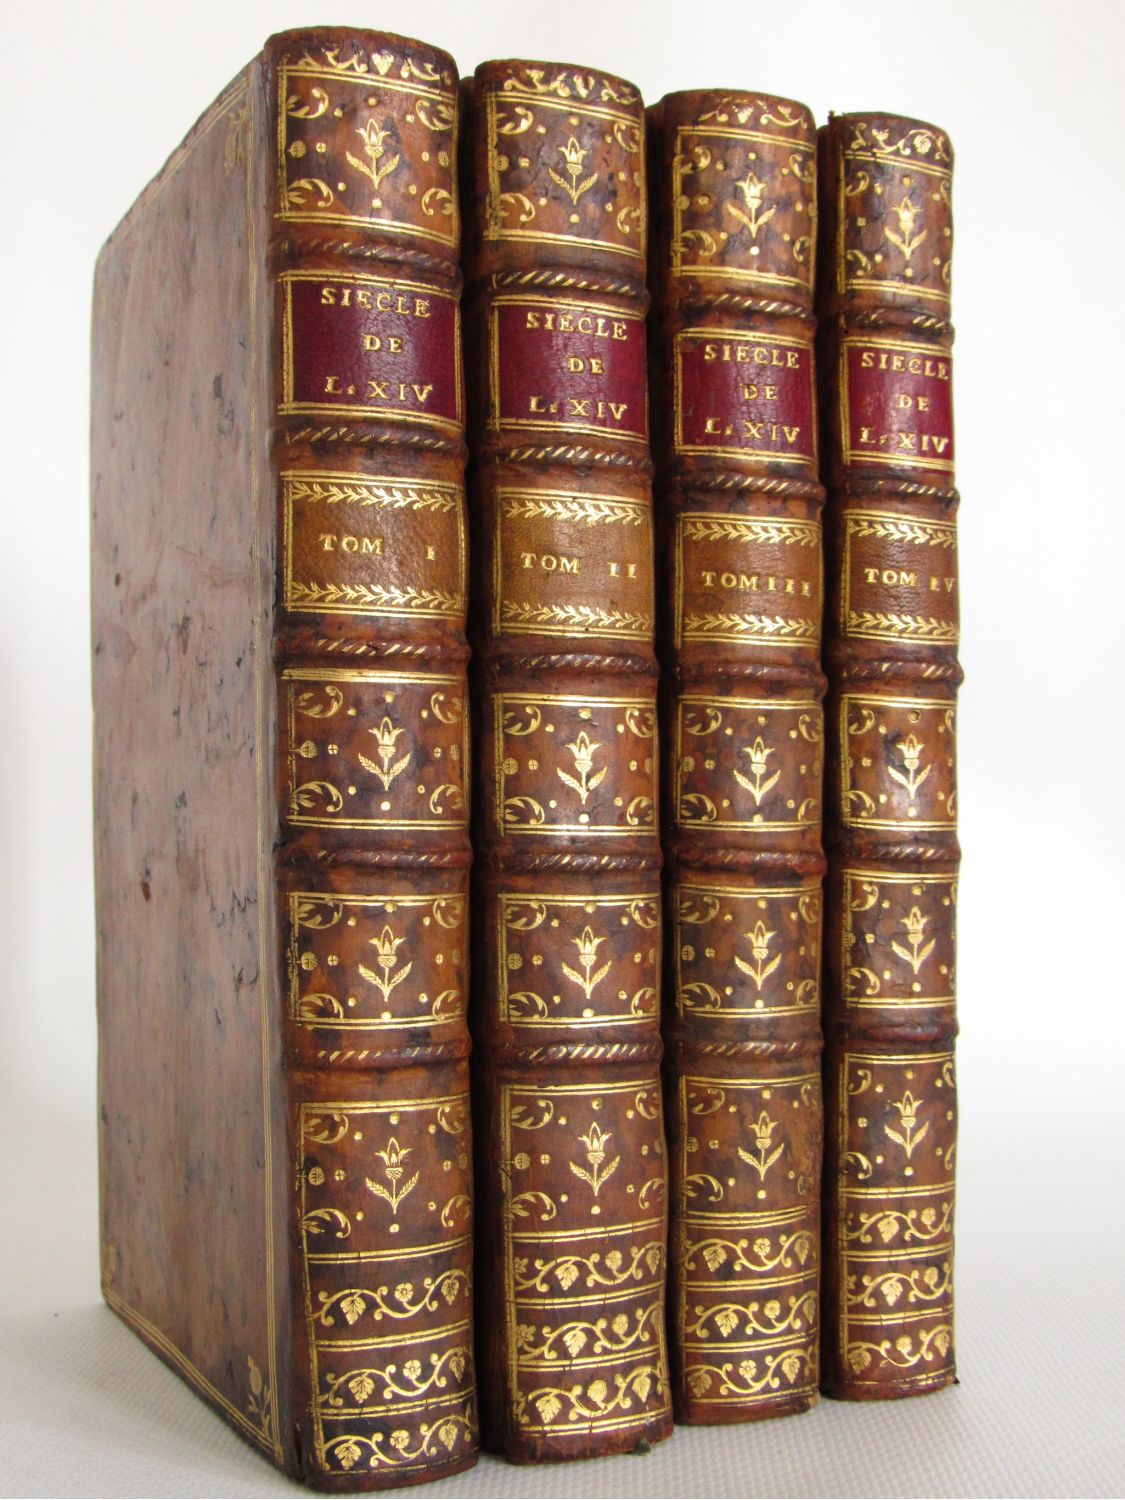 Le Siècle de Louis XIV book by Voltaire